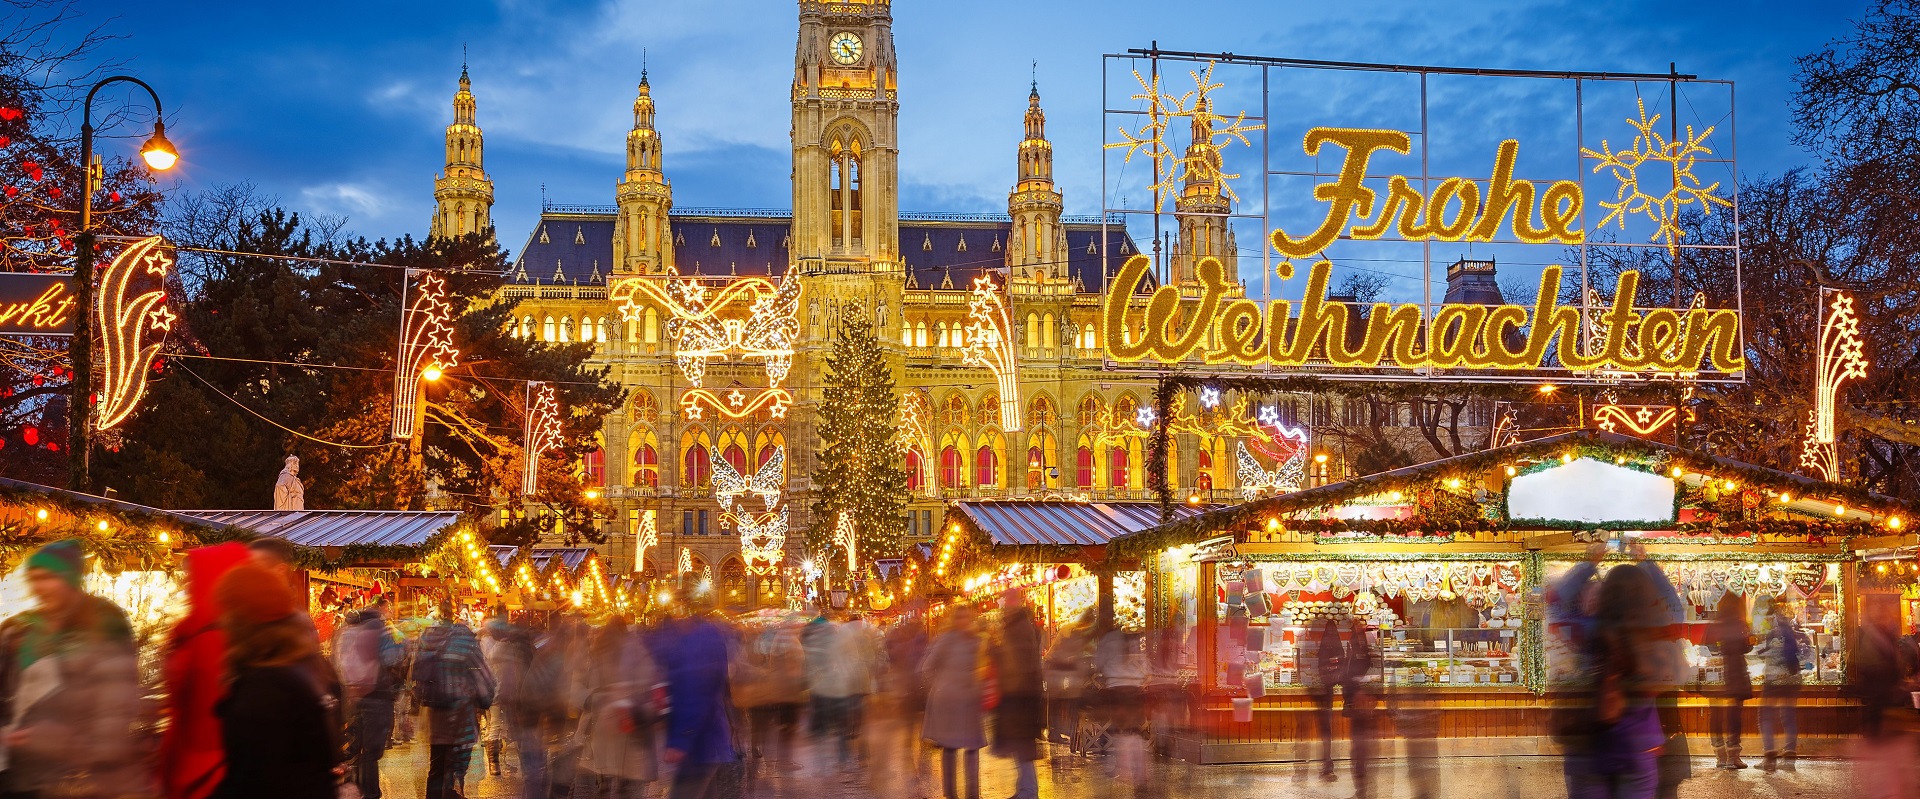 Vienna illuminated by Christmas lights.